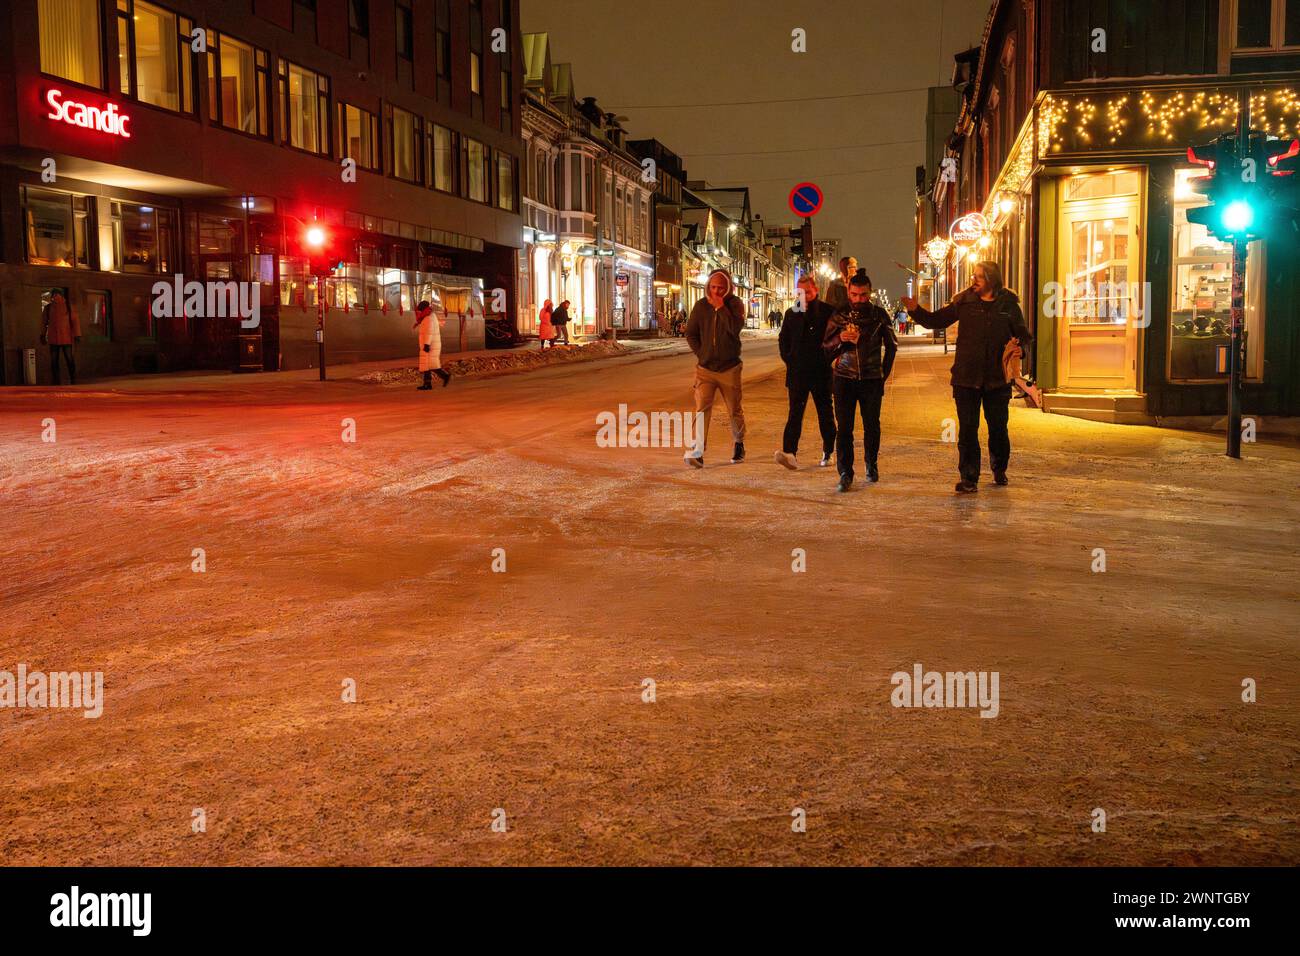 Groupe d'amis traverse la rue lors d'une nuit à Tromso, Norvège, dans le froid de l'hiver avec la rue couverte de neige et la promenade latérale Banque D'Images